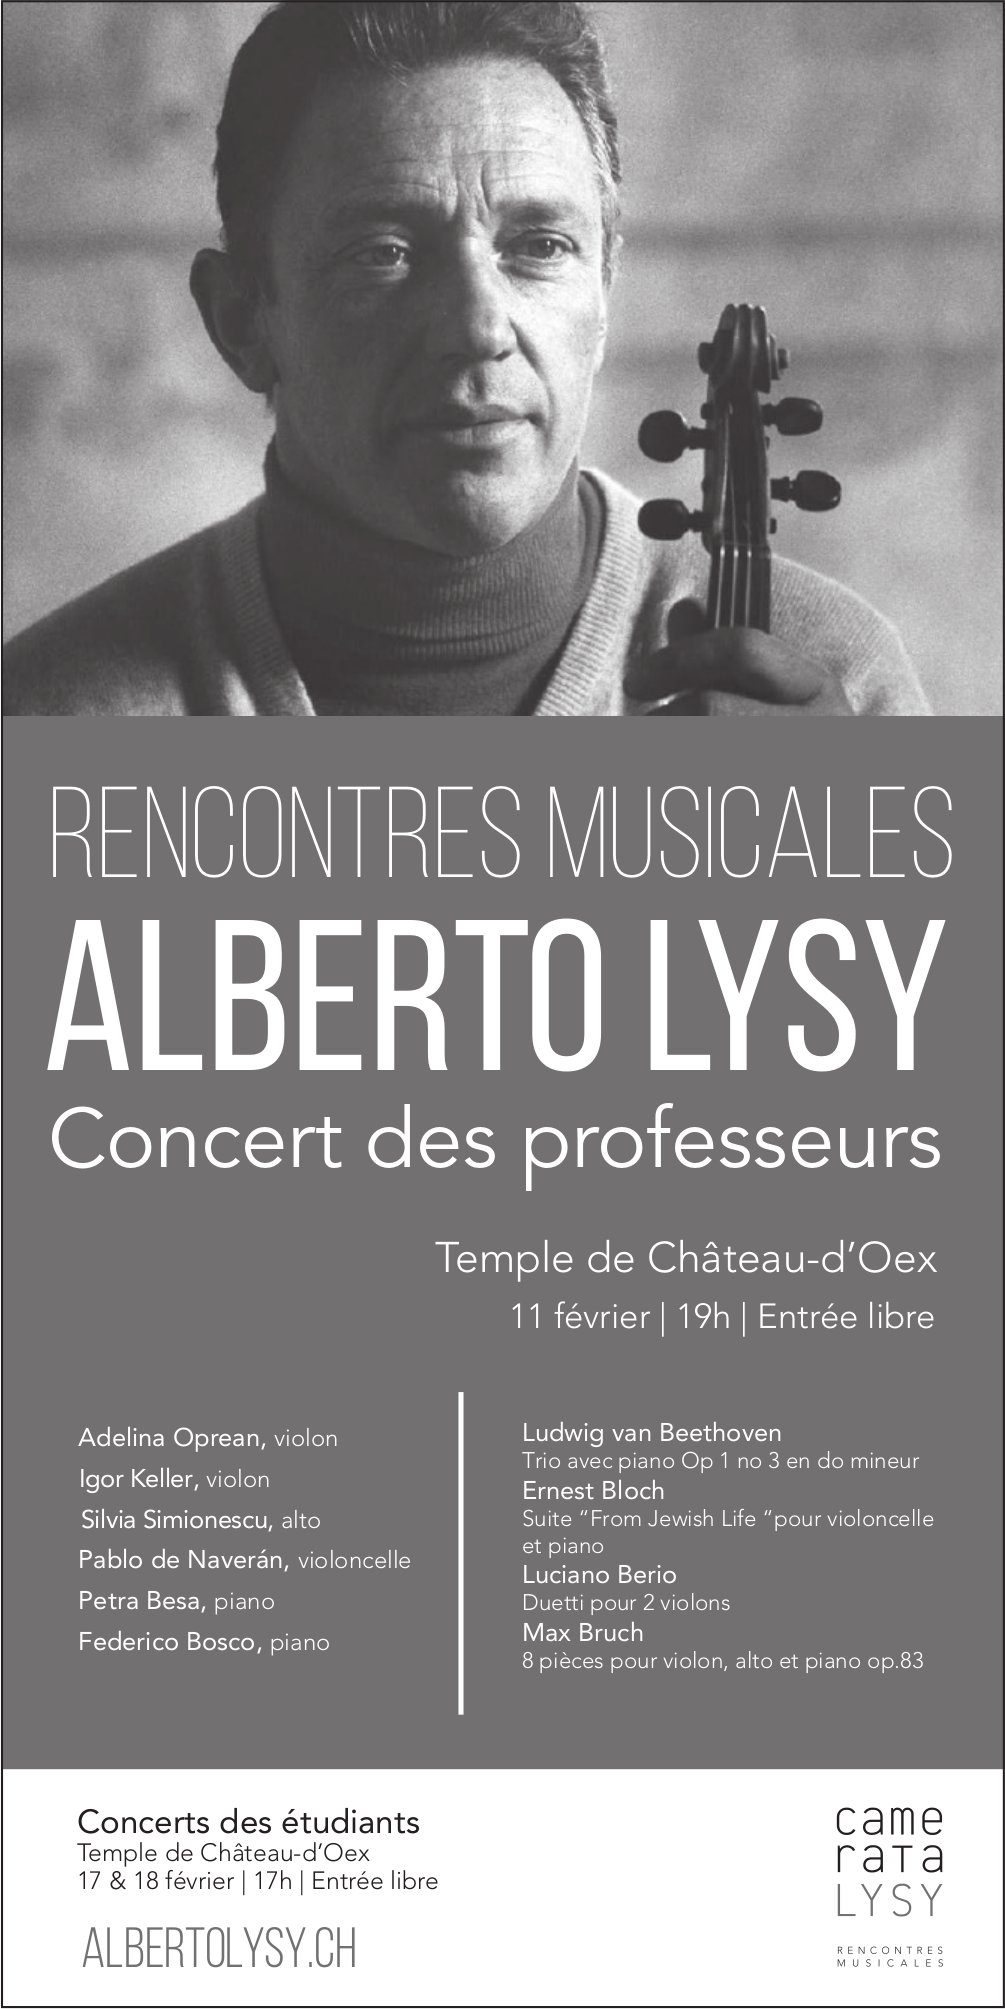 Rencontres musicales - Alberto Lysy, Concert des professeurs, 11. Februar, Temple, Château-d'Oex